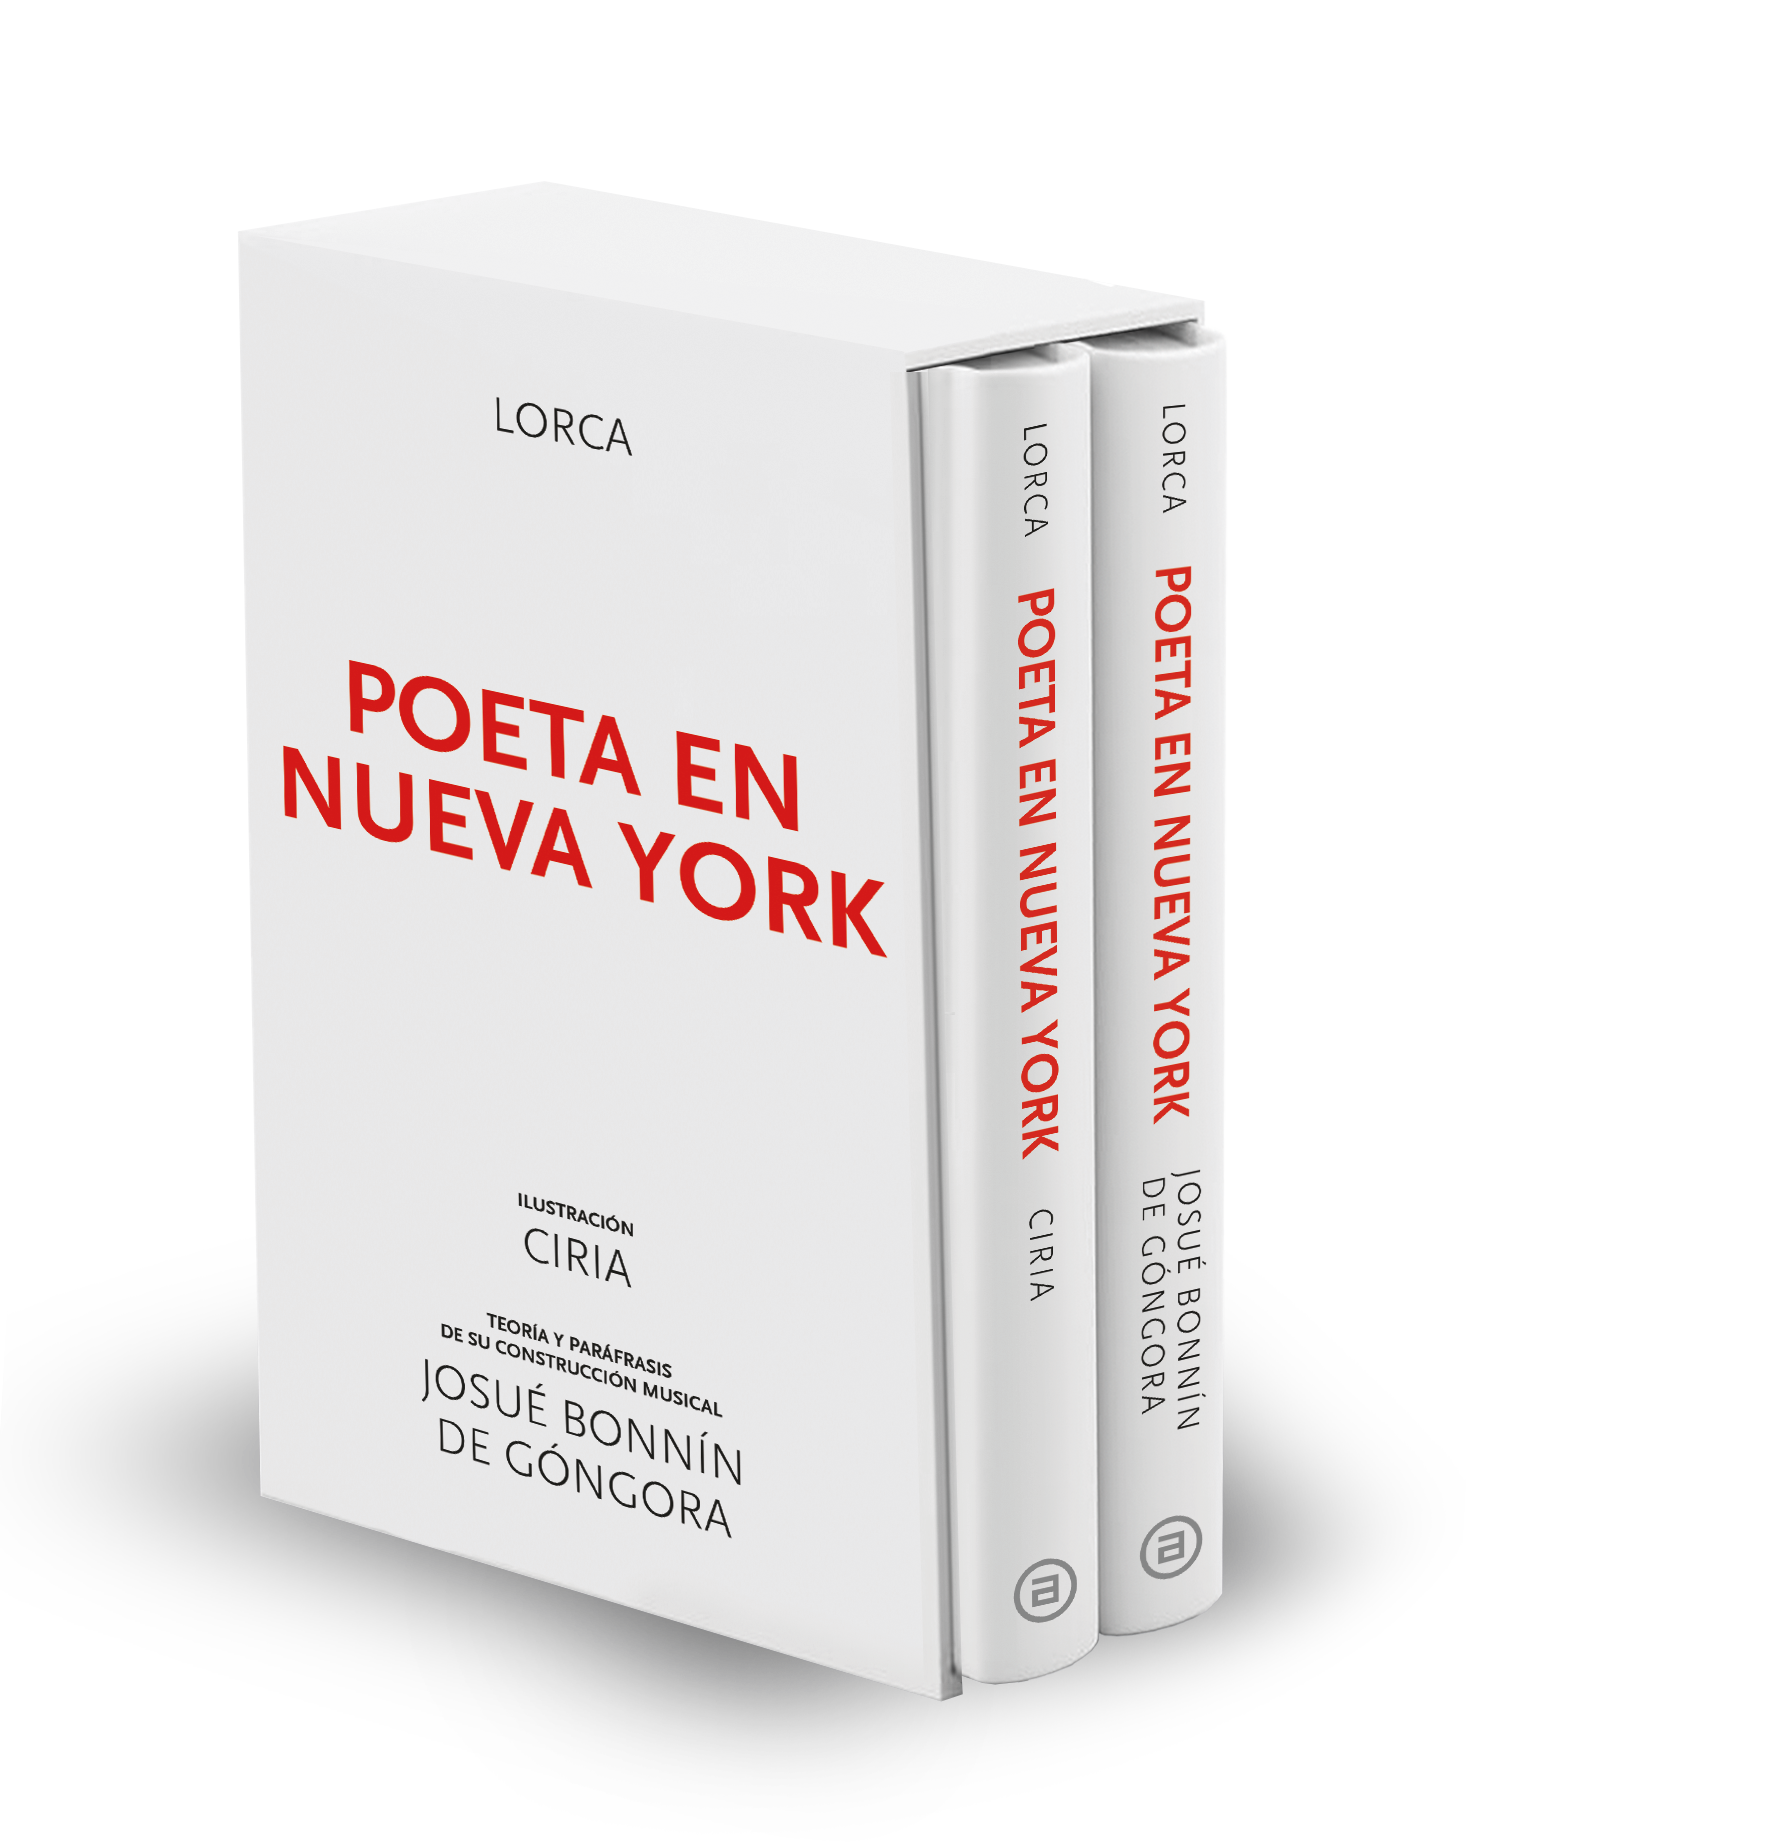 Bonnín de Góngora pone música a ‘Poeta en Nueva York’ de Lorca